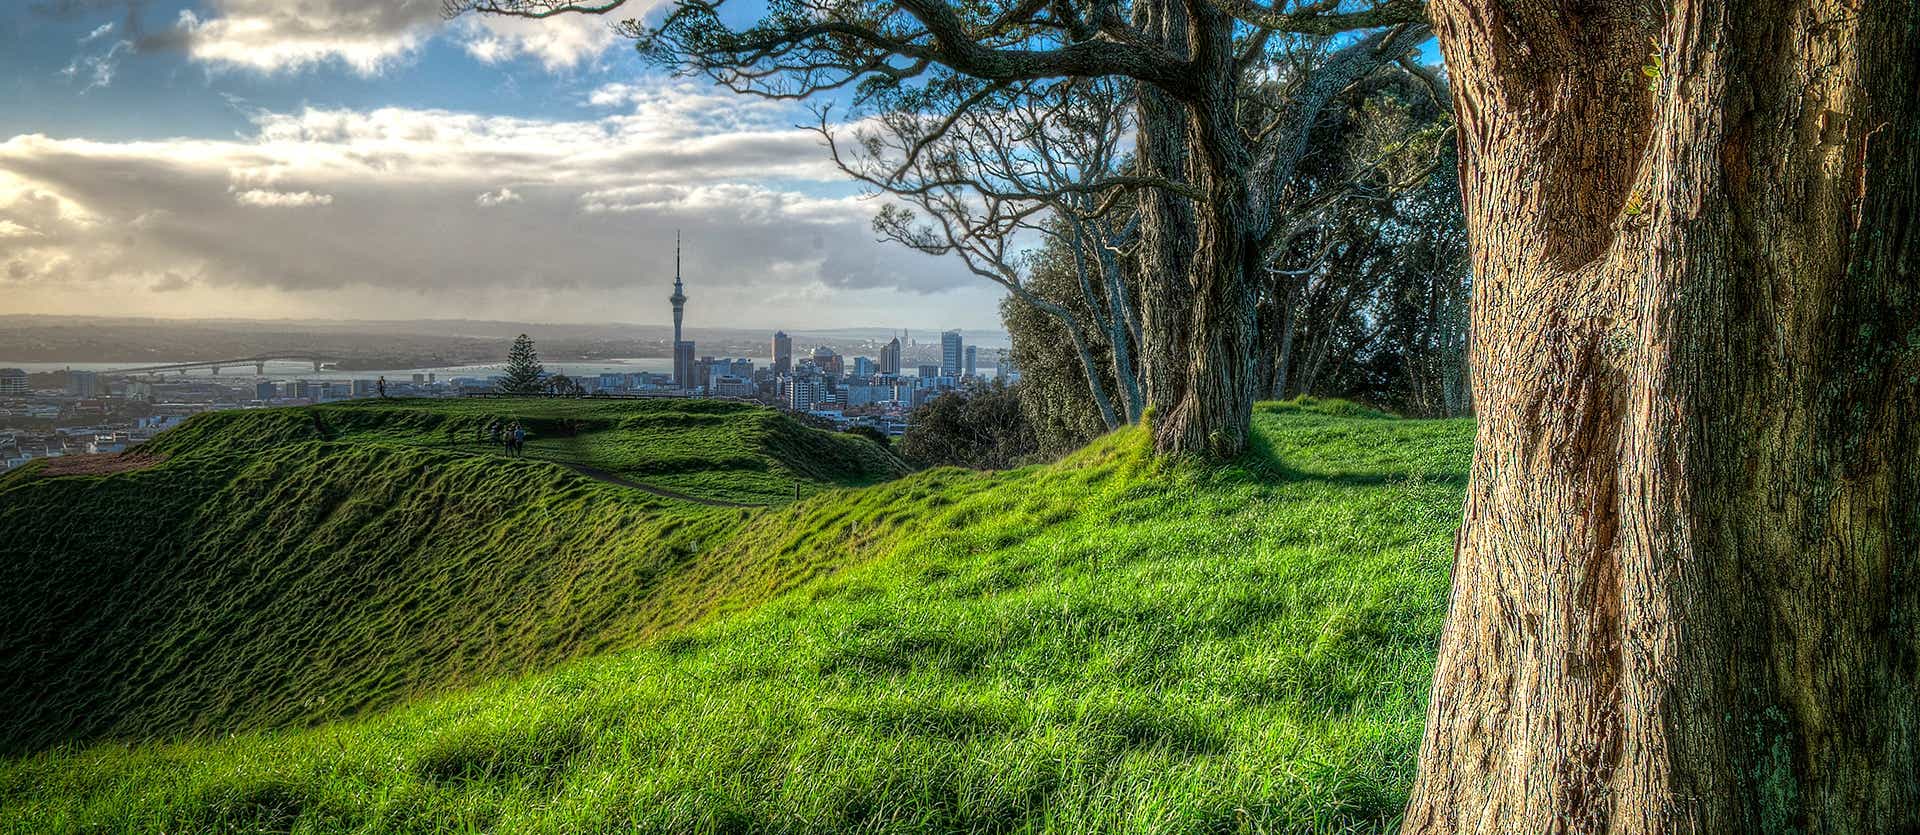 Hilltop View <span class="iconos separador"></span> Auckland